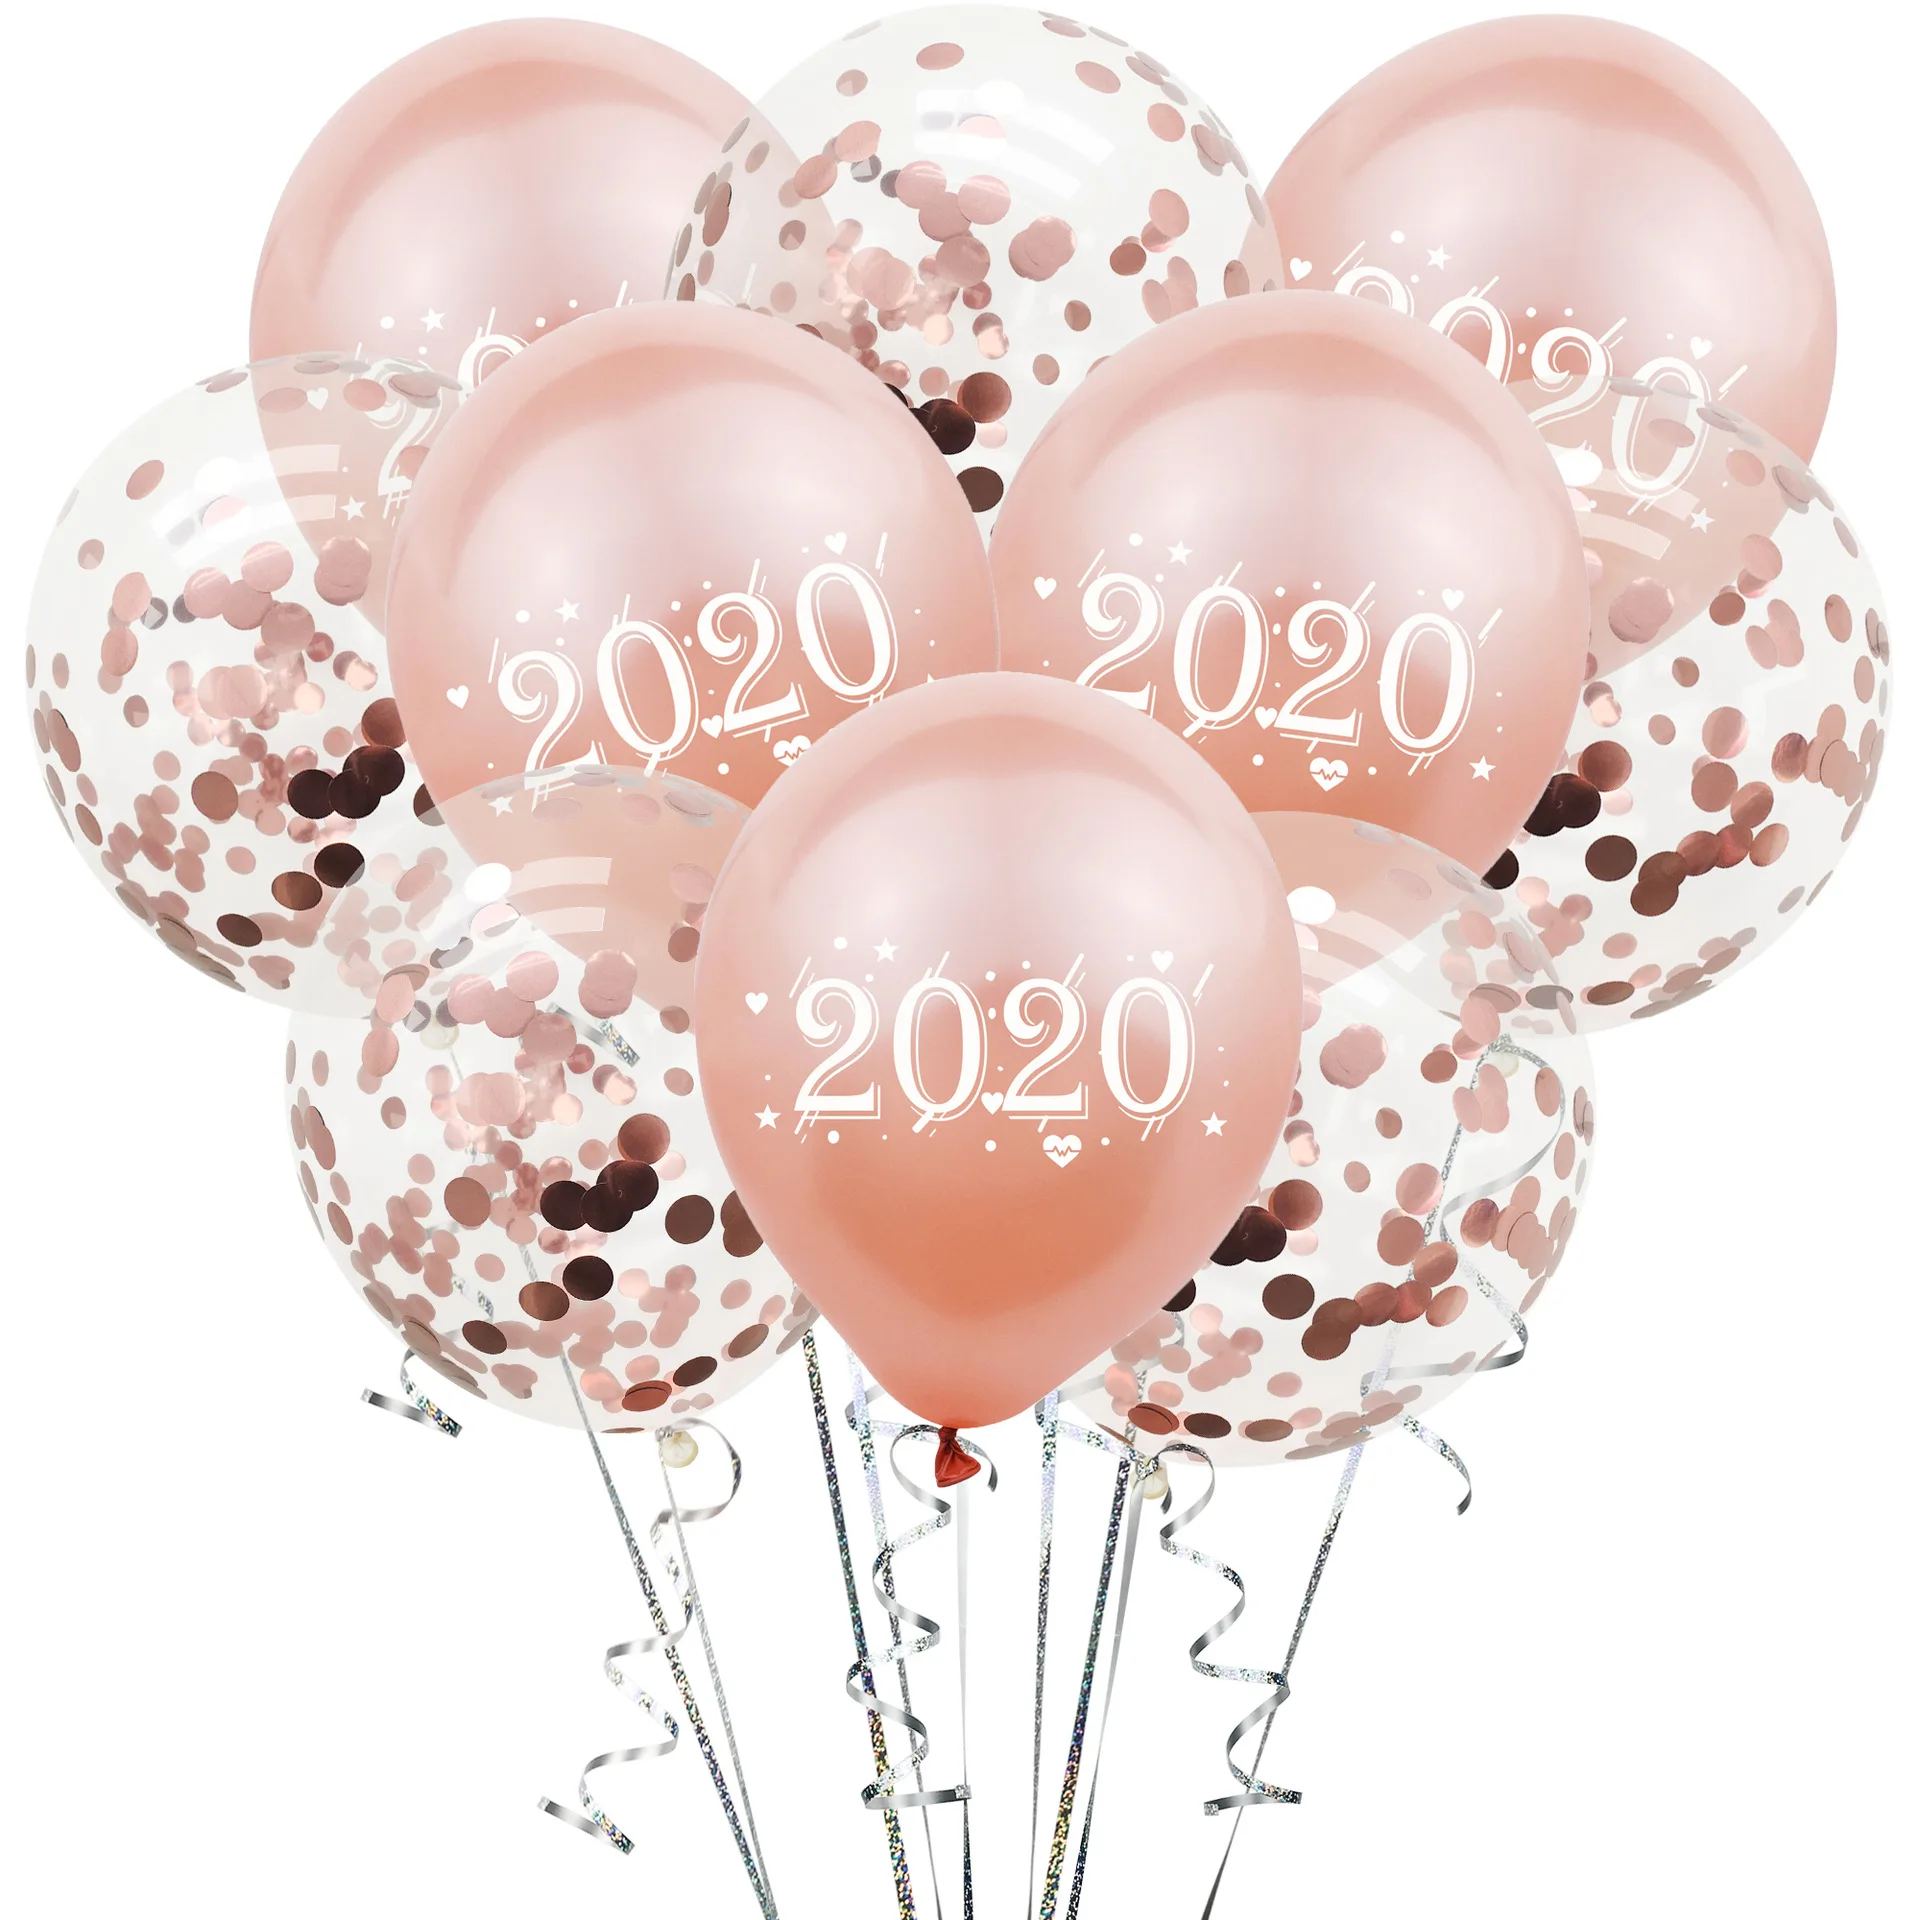 10 шт./упак. латекс конфетти для воздушного шара с воздушным шаром 12 дюймов счастливый год Свадебные украшения ко дню рождения